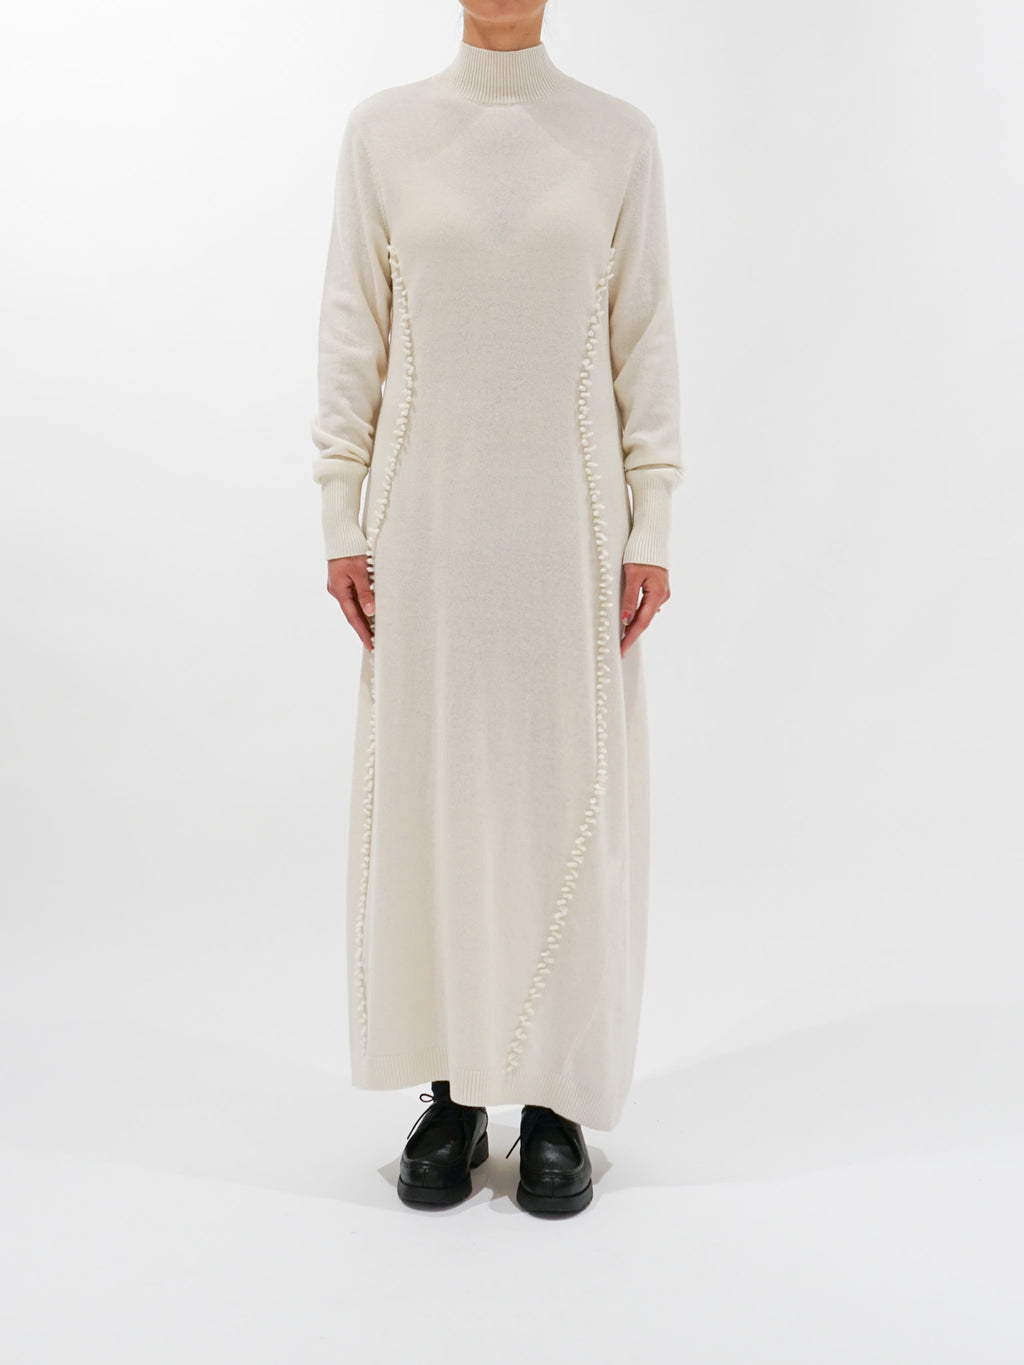 Namu Shop - Babaco Small Fringe Dress - Ivory